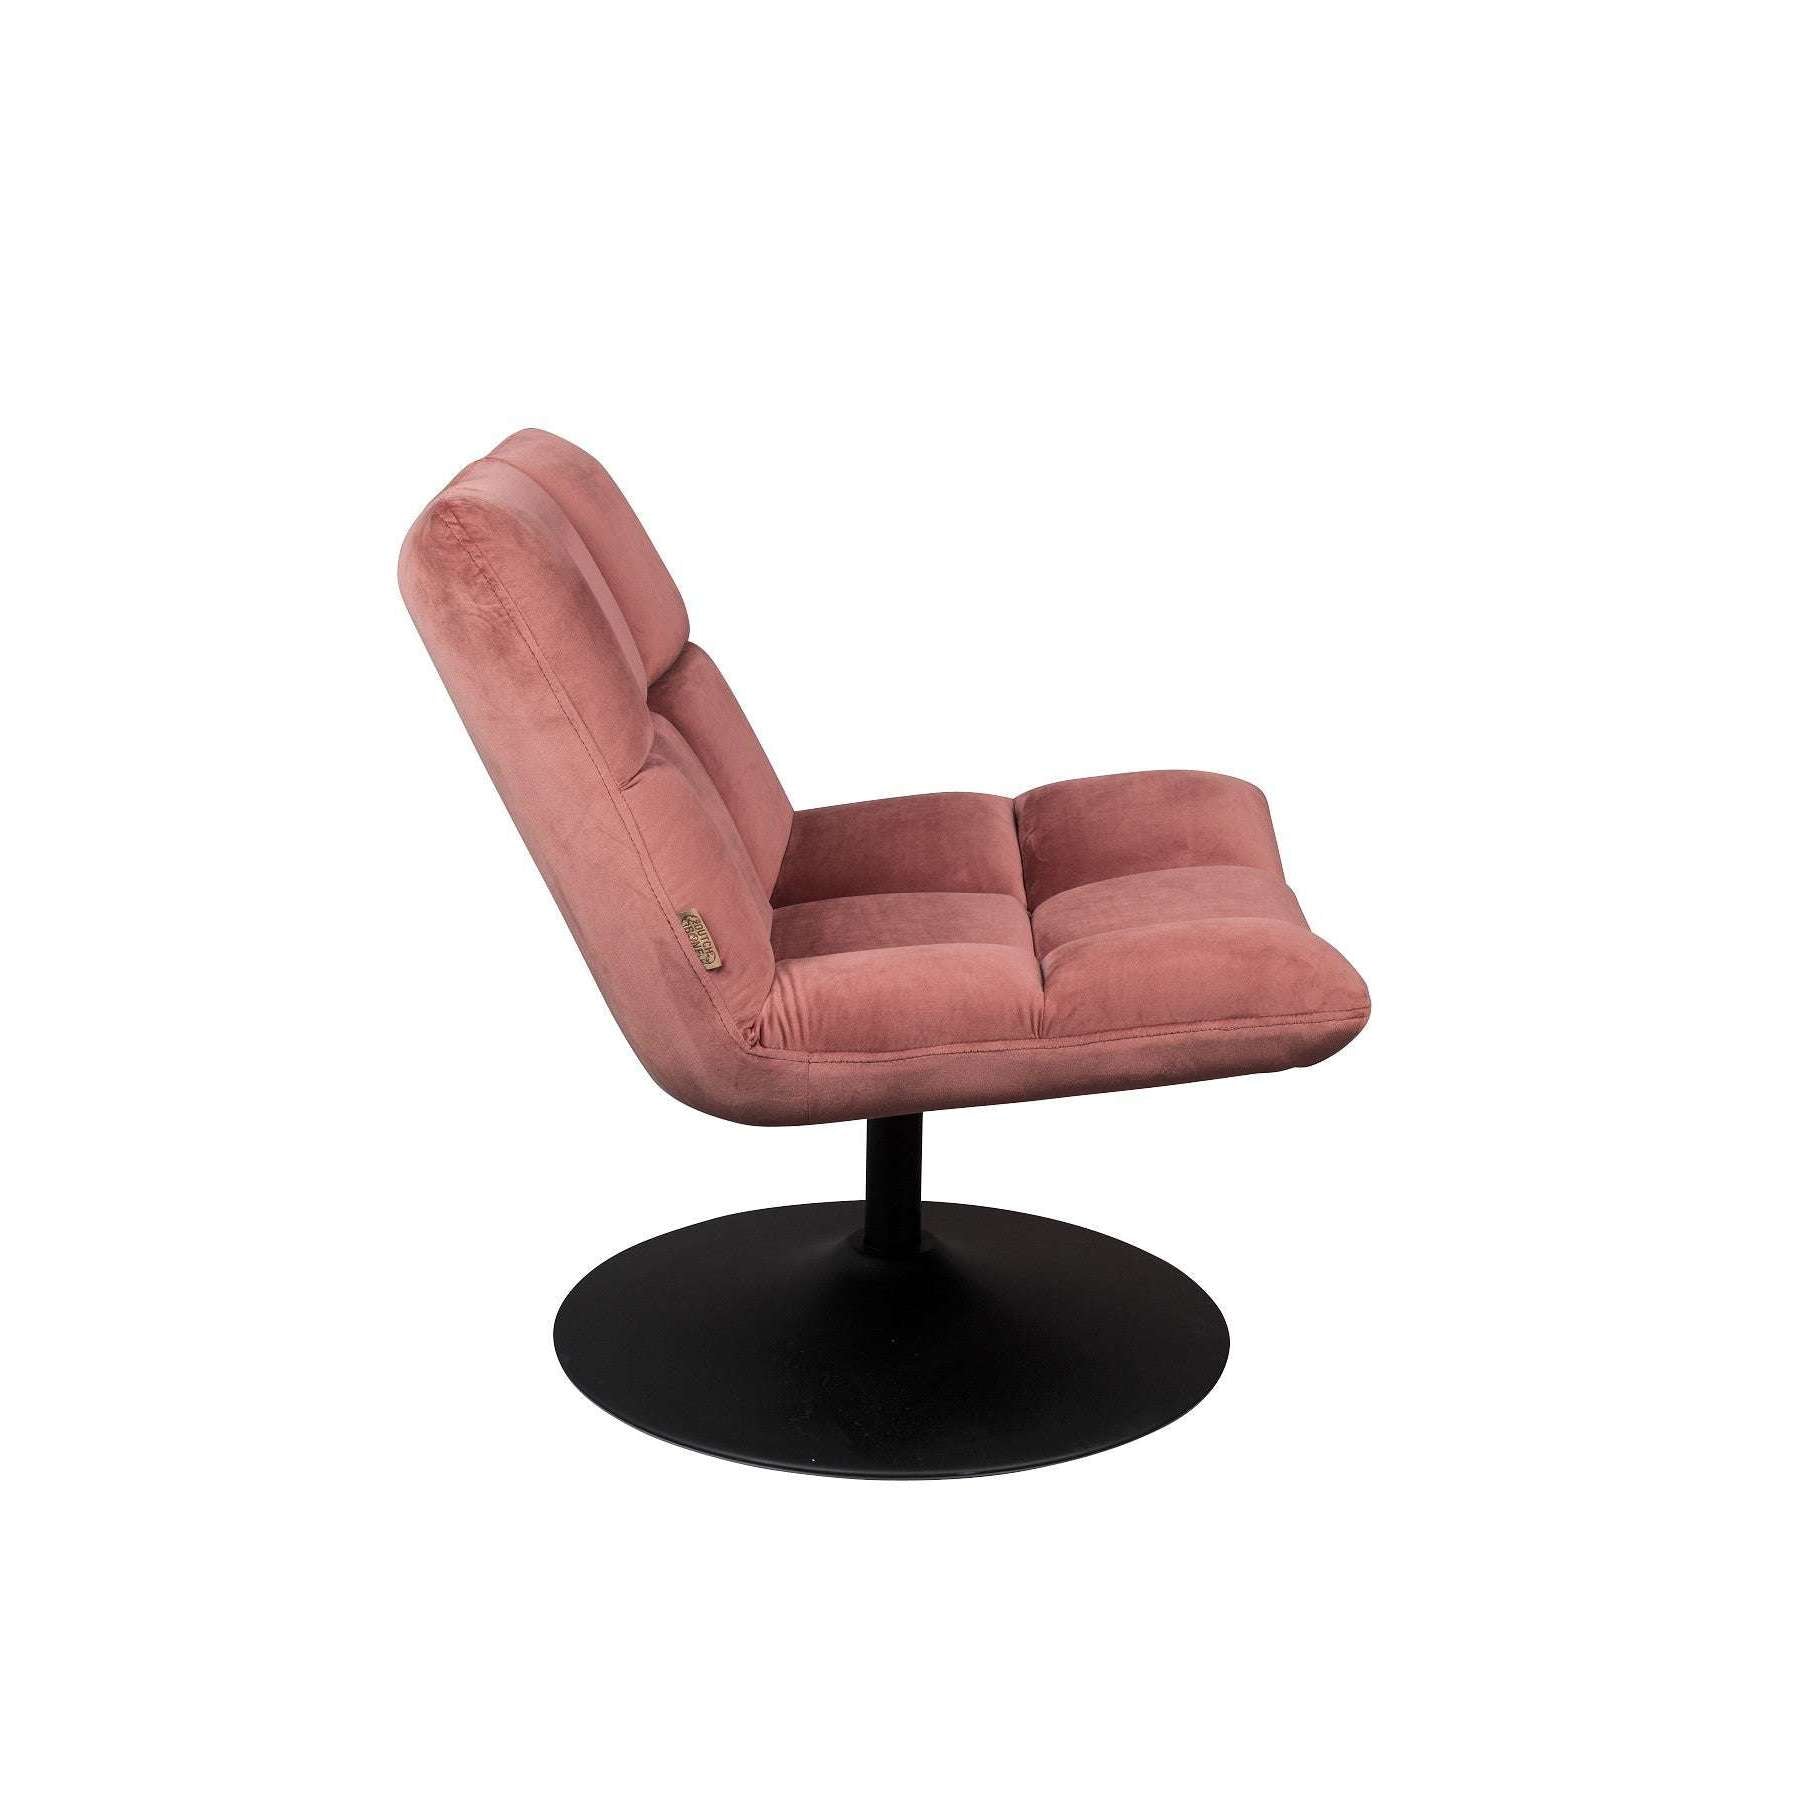 Staat medeklinker Vervelend Dutchbone fauteuil bar velvet oud roze 81 x 66 x 78 cm – Selinni